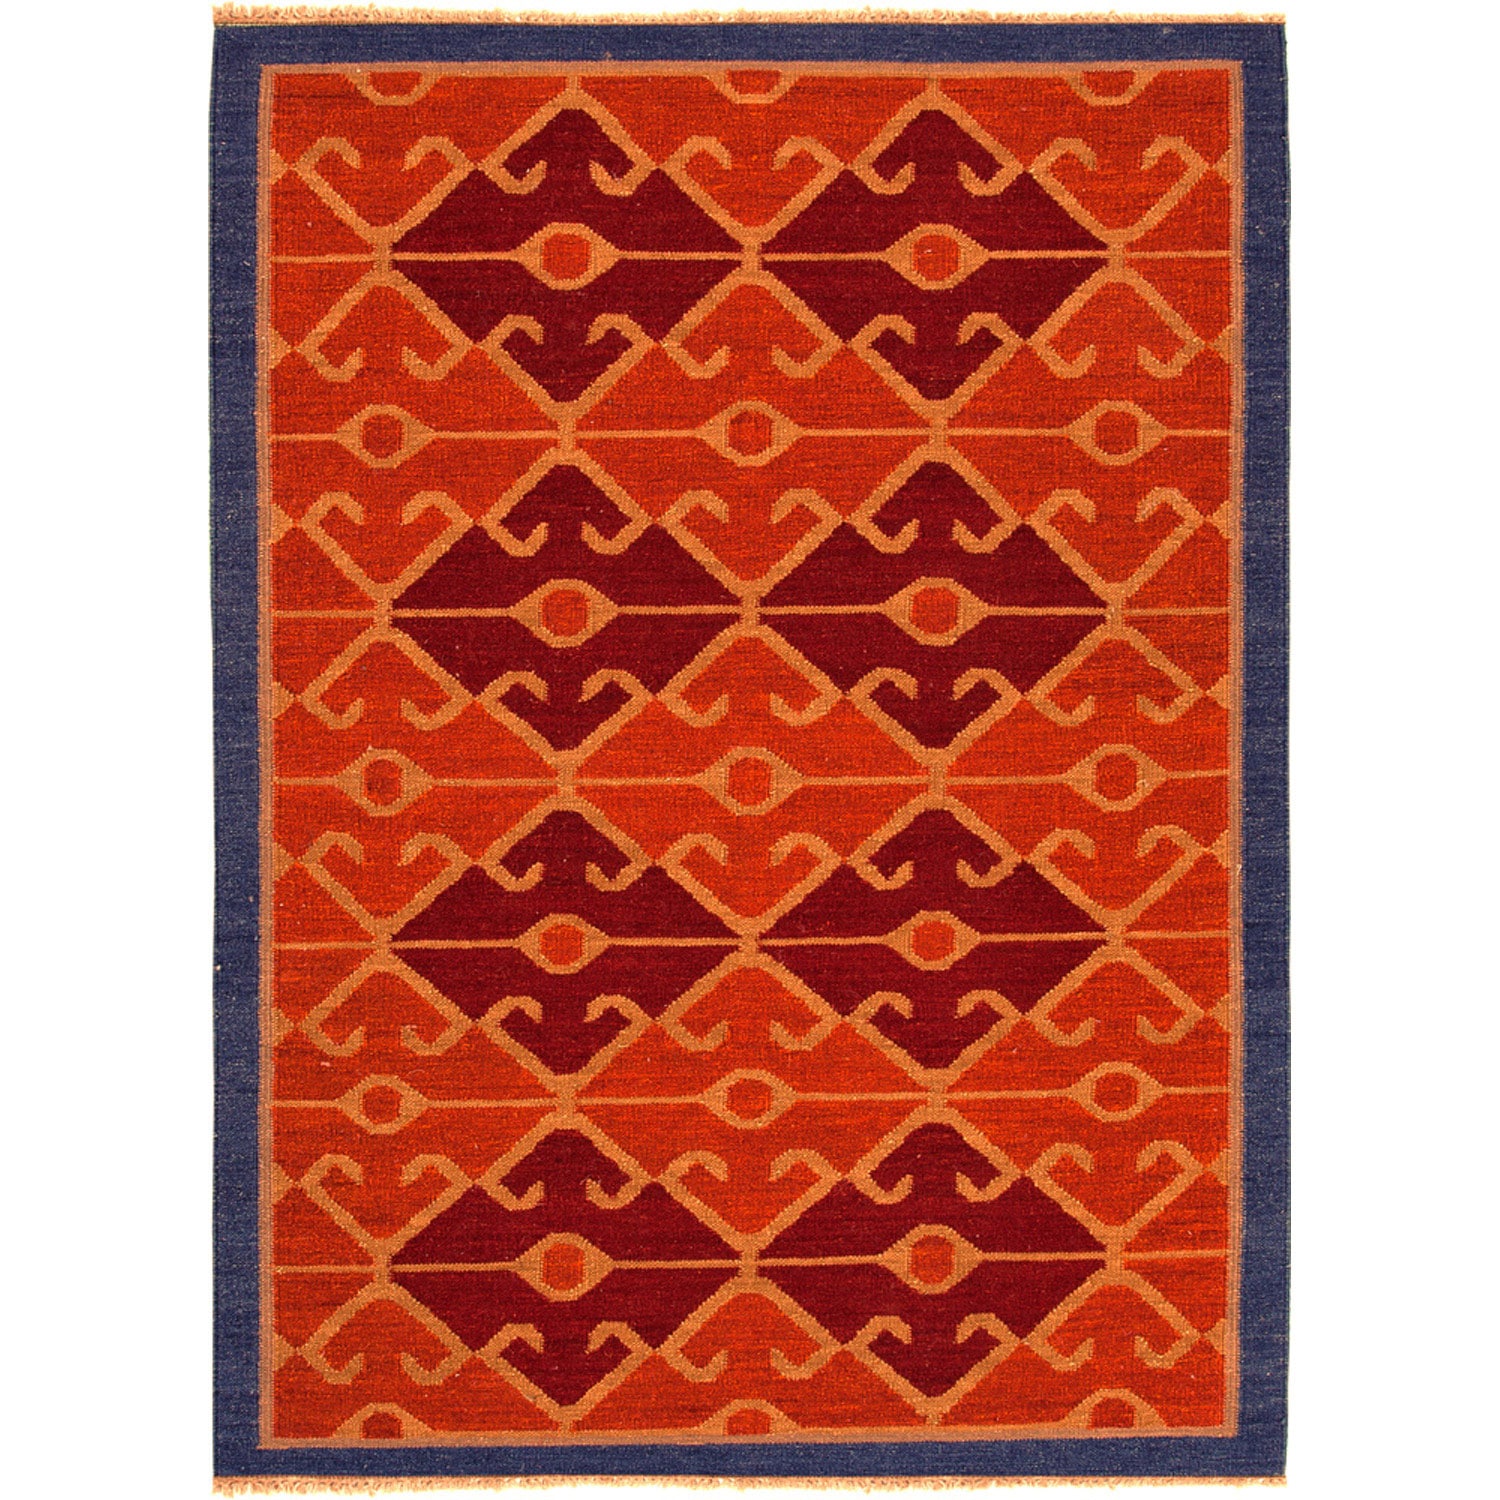 Handmade Flatweave Tribal Pattern Multi colored Wool Rug (5 X 8)